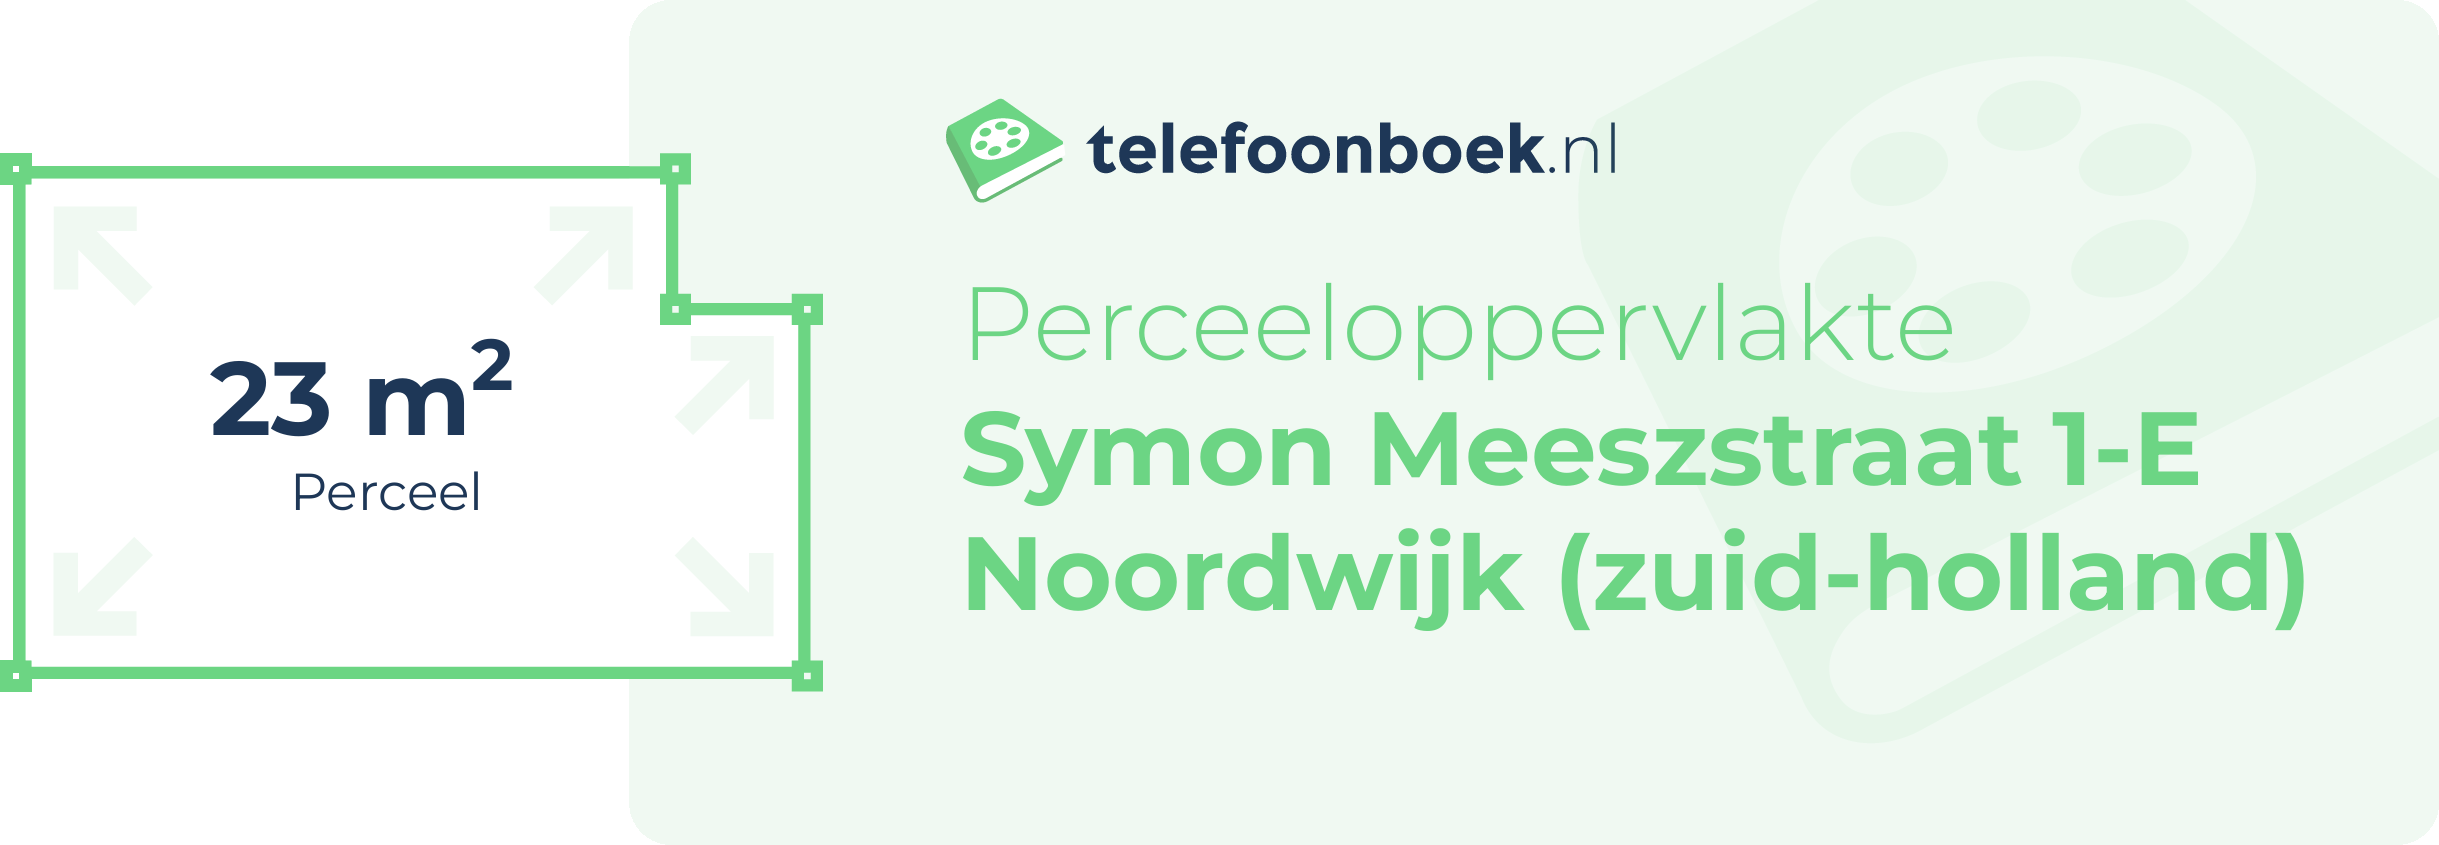 Perceeloppervlakte Symon Meeszstraat 1-E Noordwijk (Zuid-Holland)